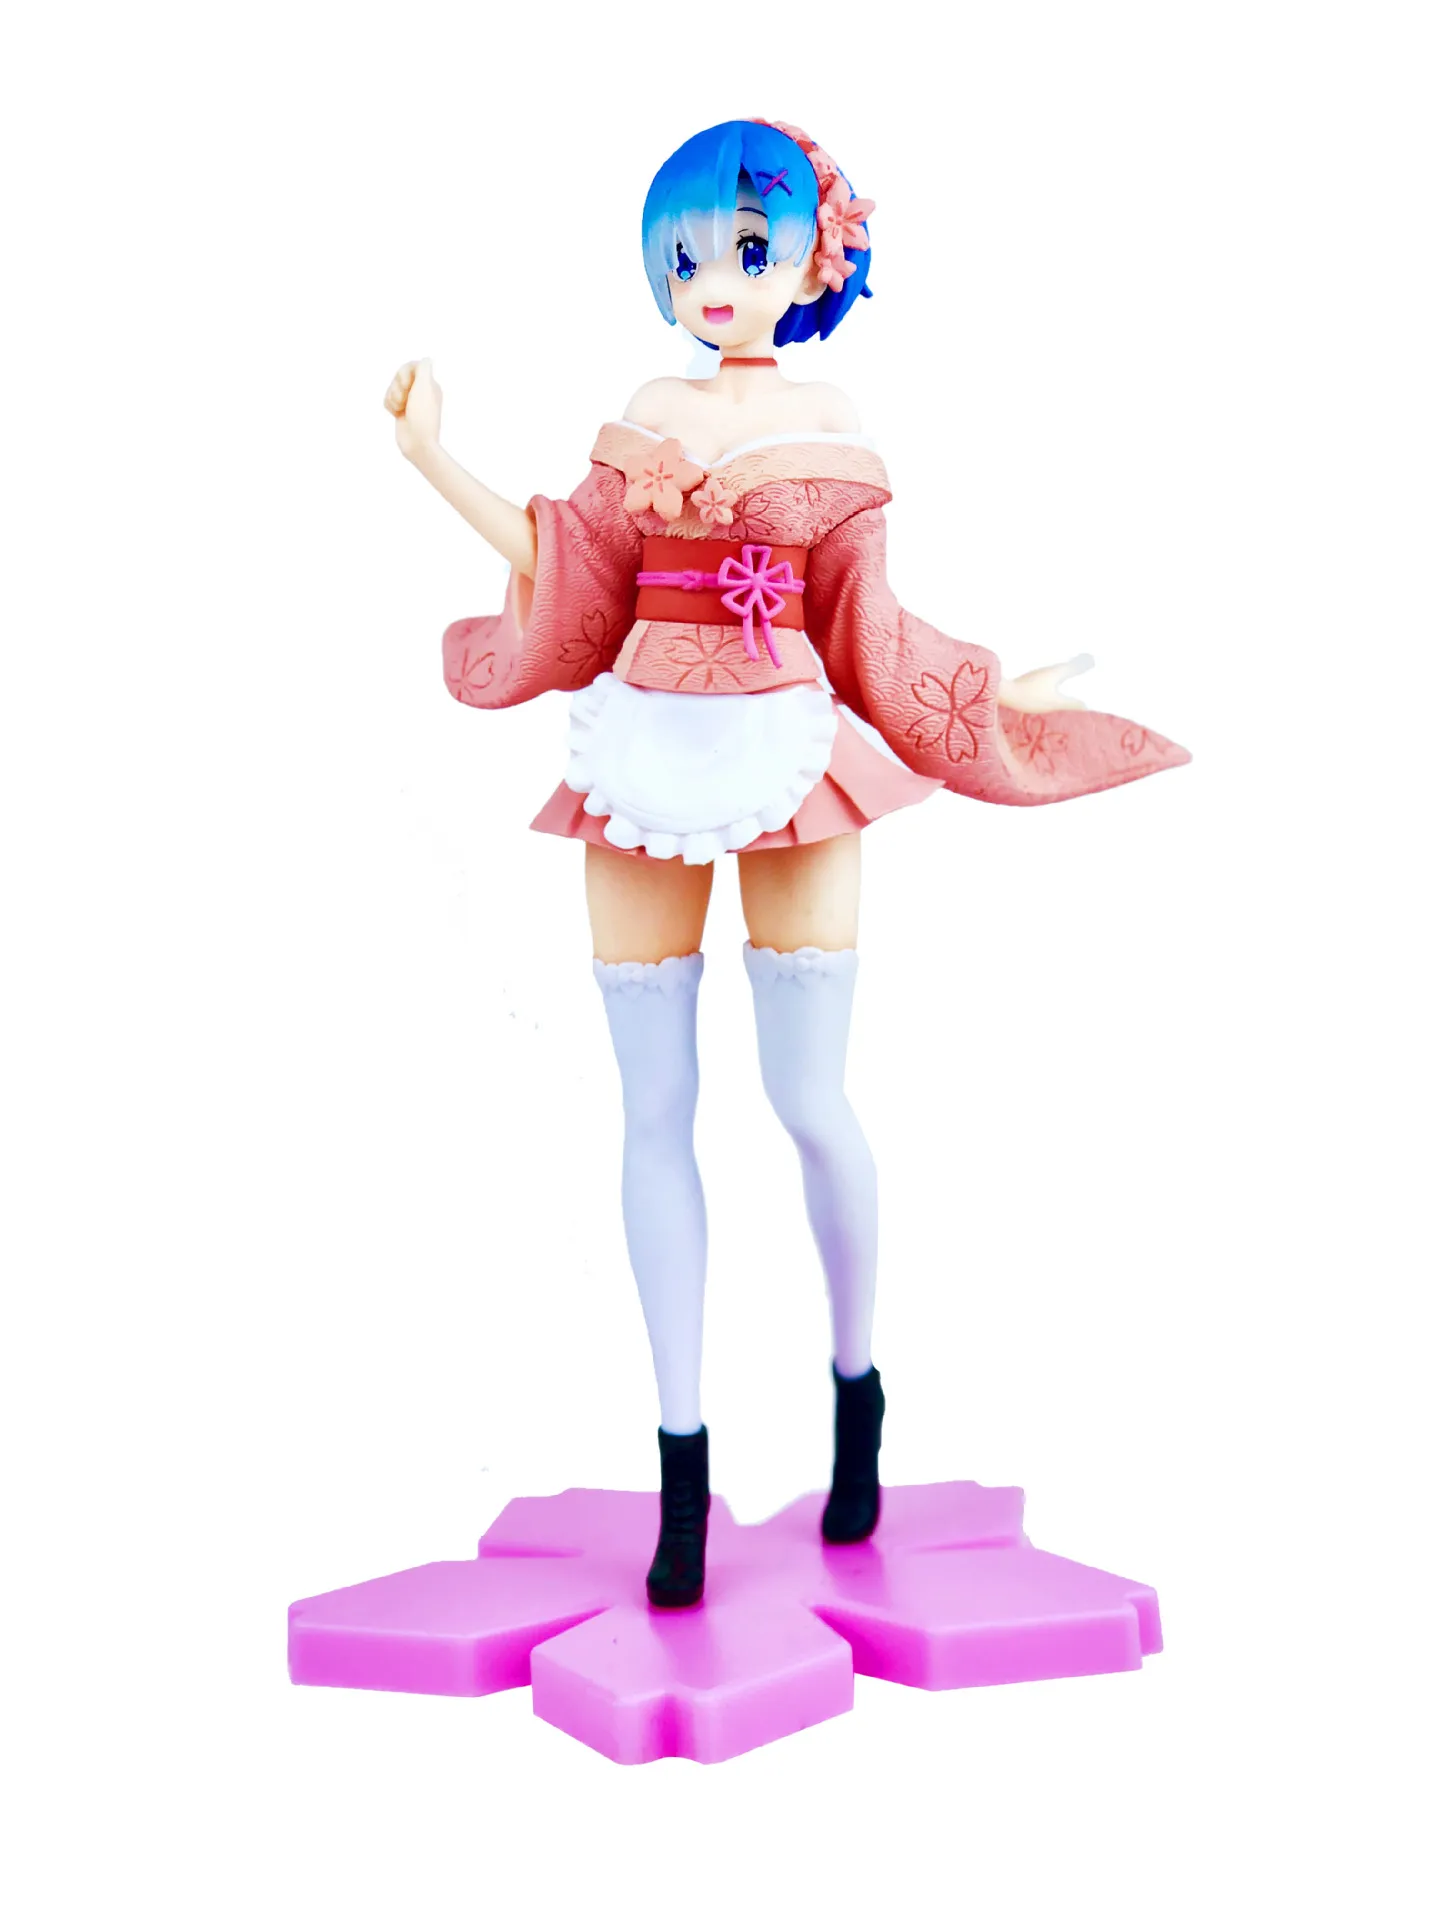 Fatto a mano un mondo diverso fiori di ciliegio REM rosa postura in piedi kimono postura eretta bella ragazza modello altezza circa 23 cm